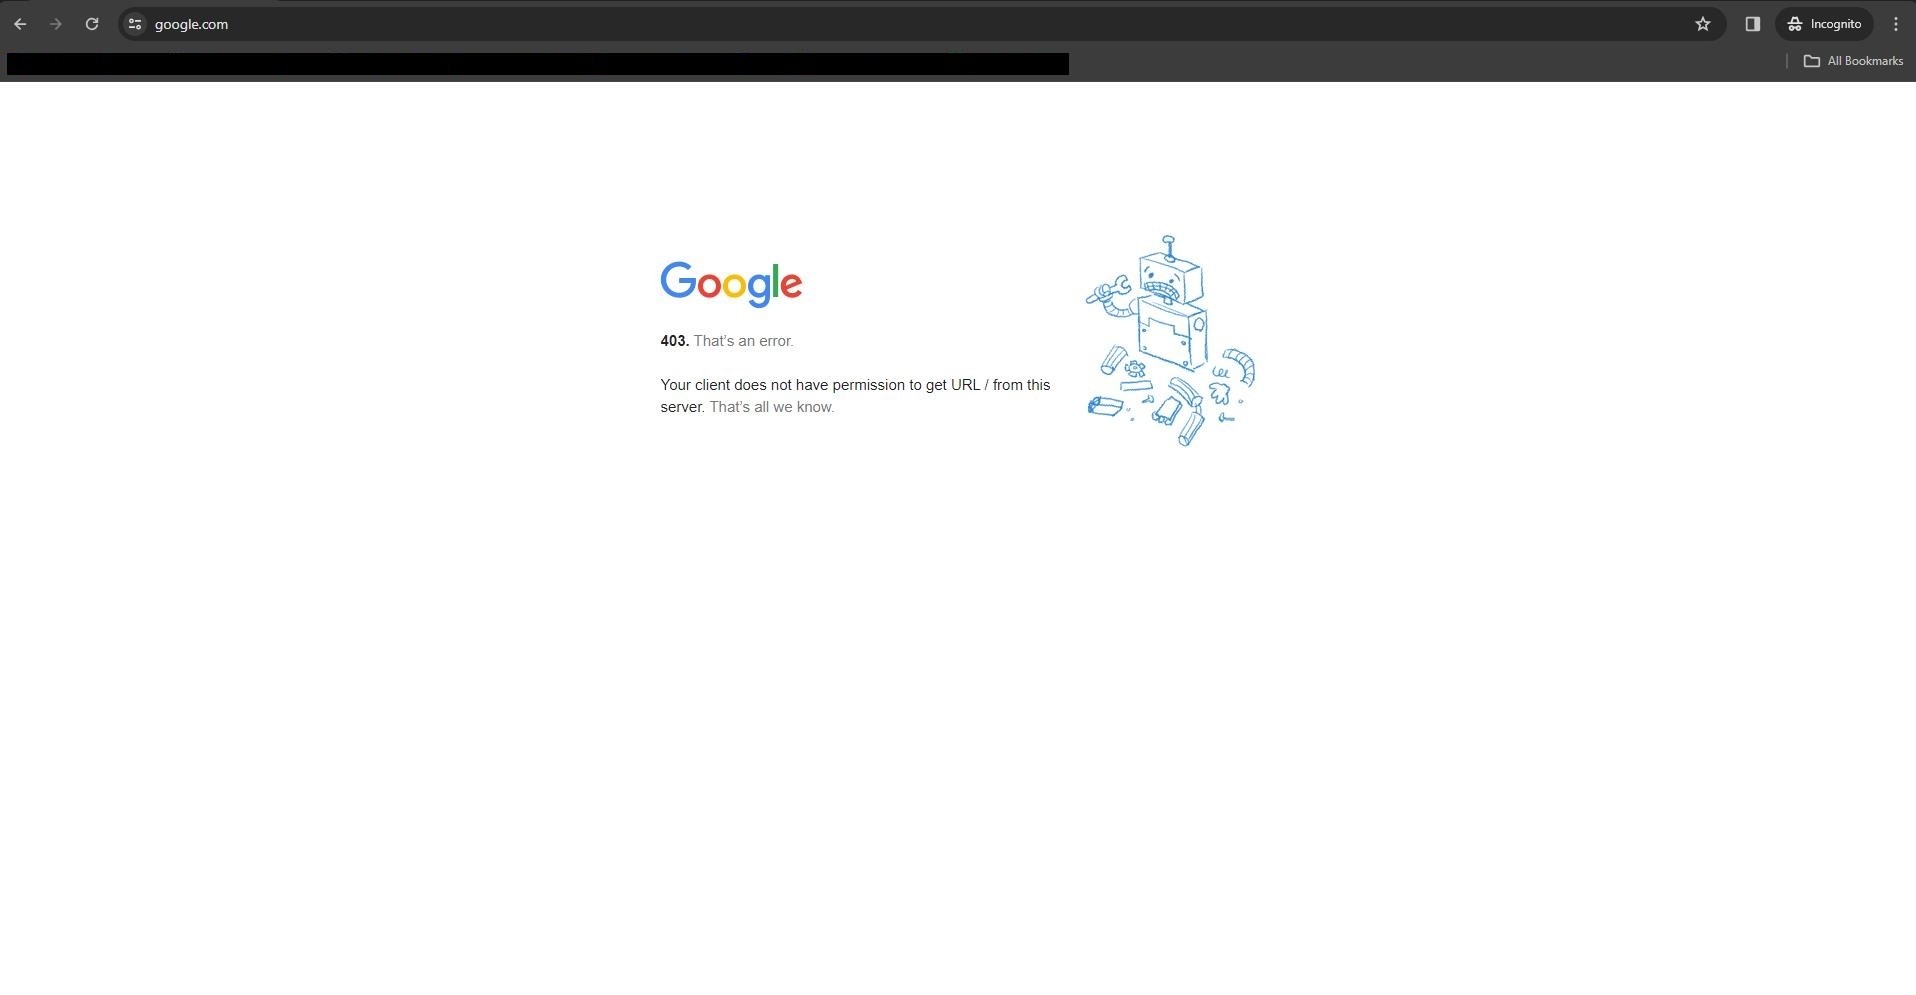 کاربران ایرانی گوگل هنوز هم نمی توانند از حالت ناشناس google.com استفاده کنند